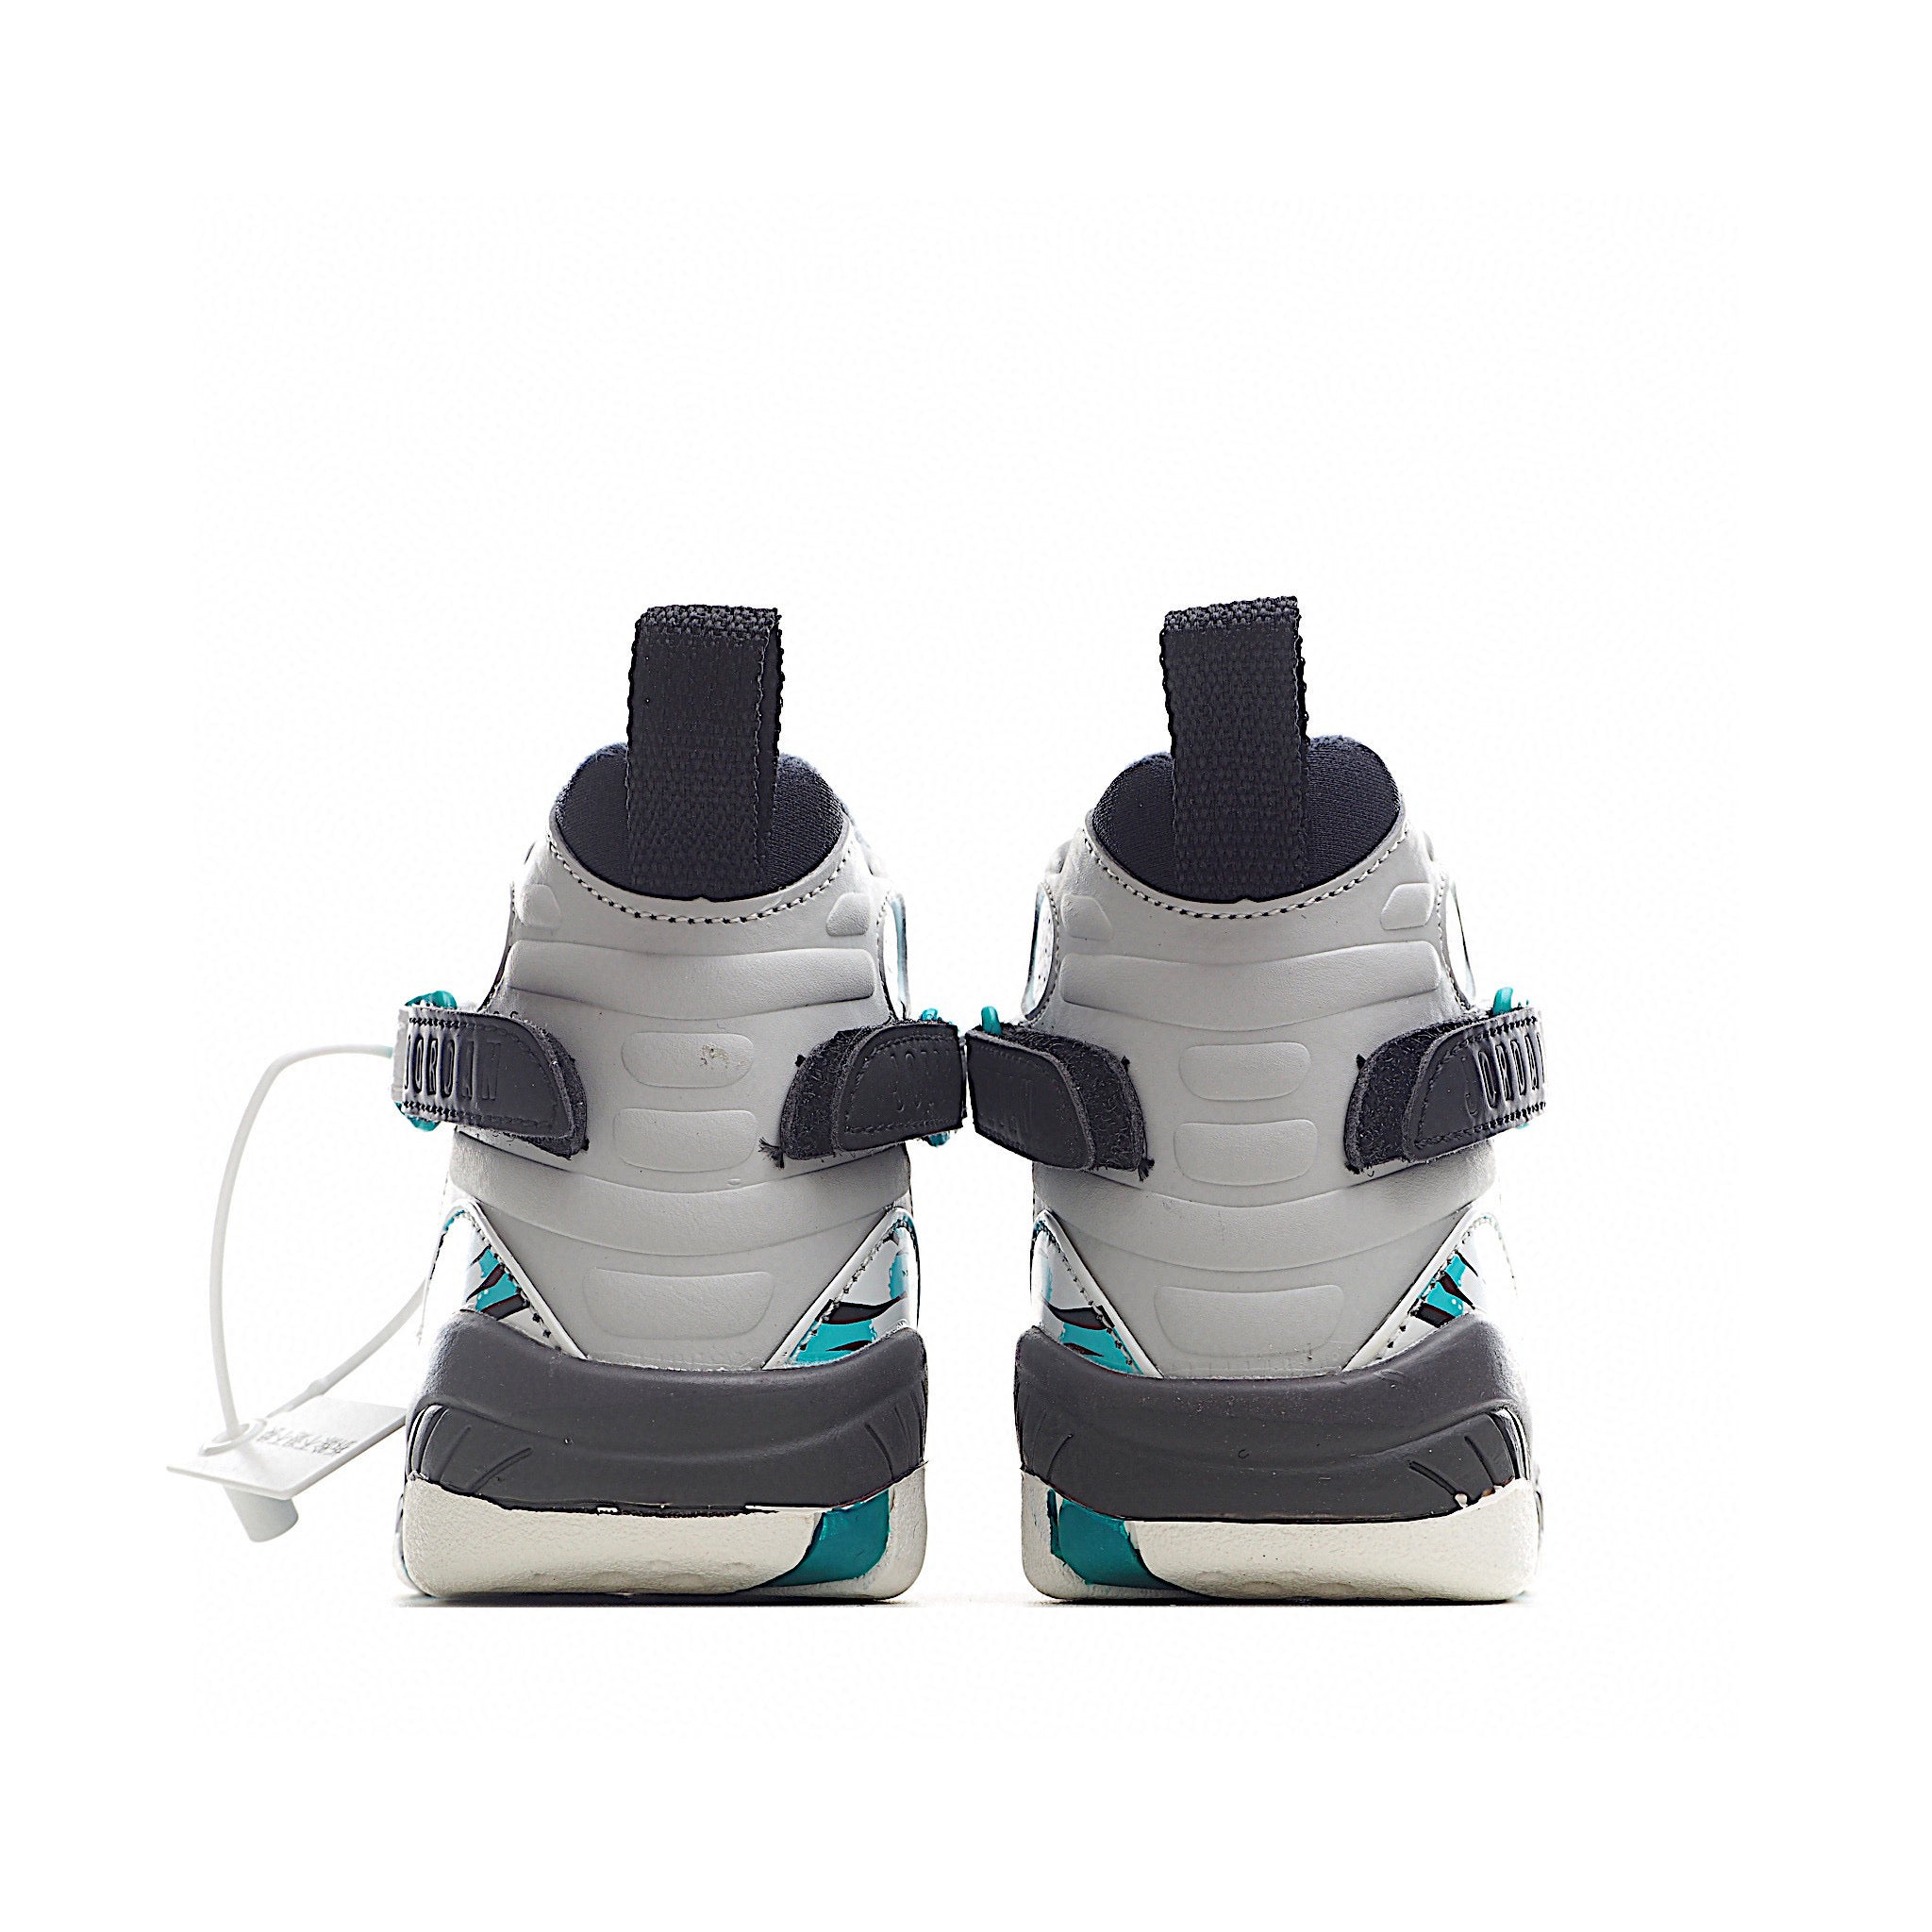 Nike air jordan 8 rétro blanc bleu chaussures